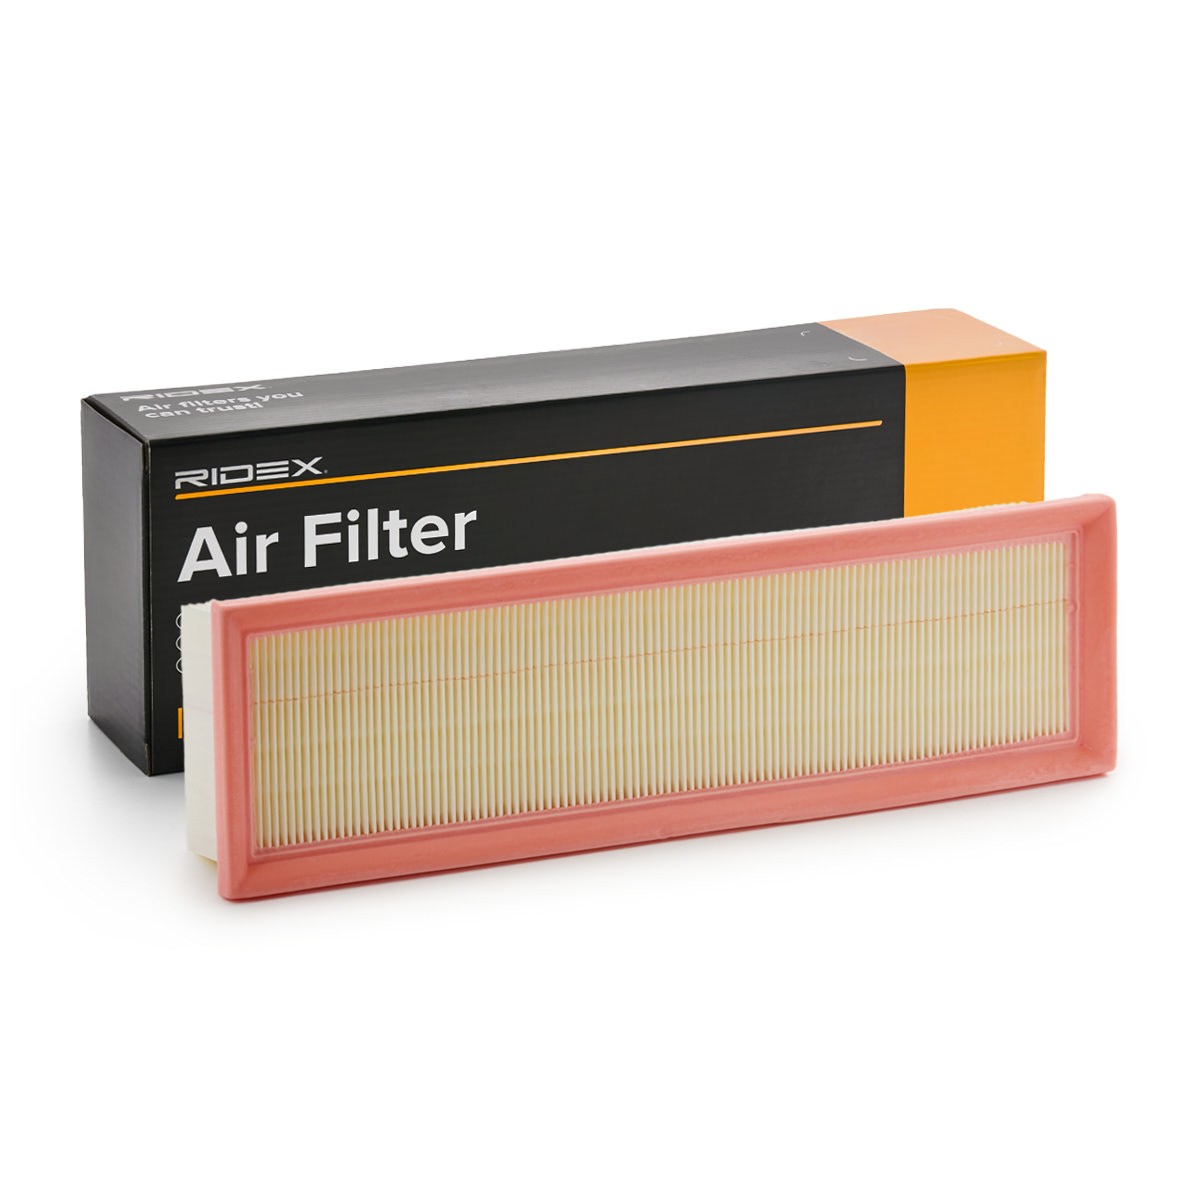 RIDEX 8A0897 Air filter 56mm, 102mm, 335mm, rectangular, Filter Insert, Air Recirculation Filter